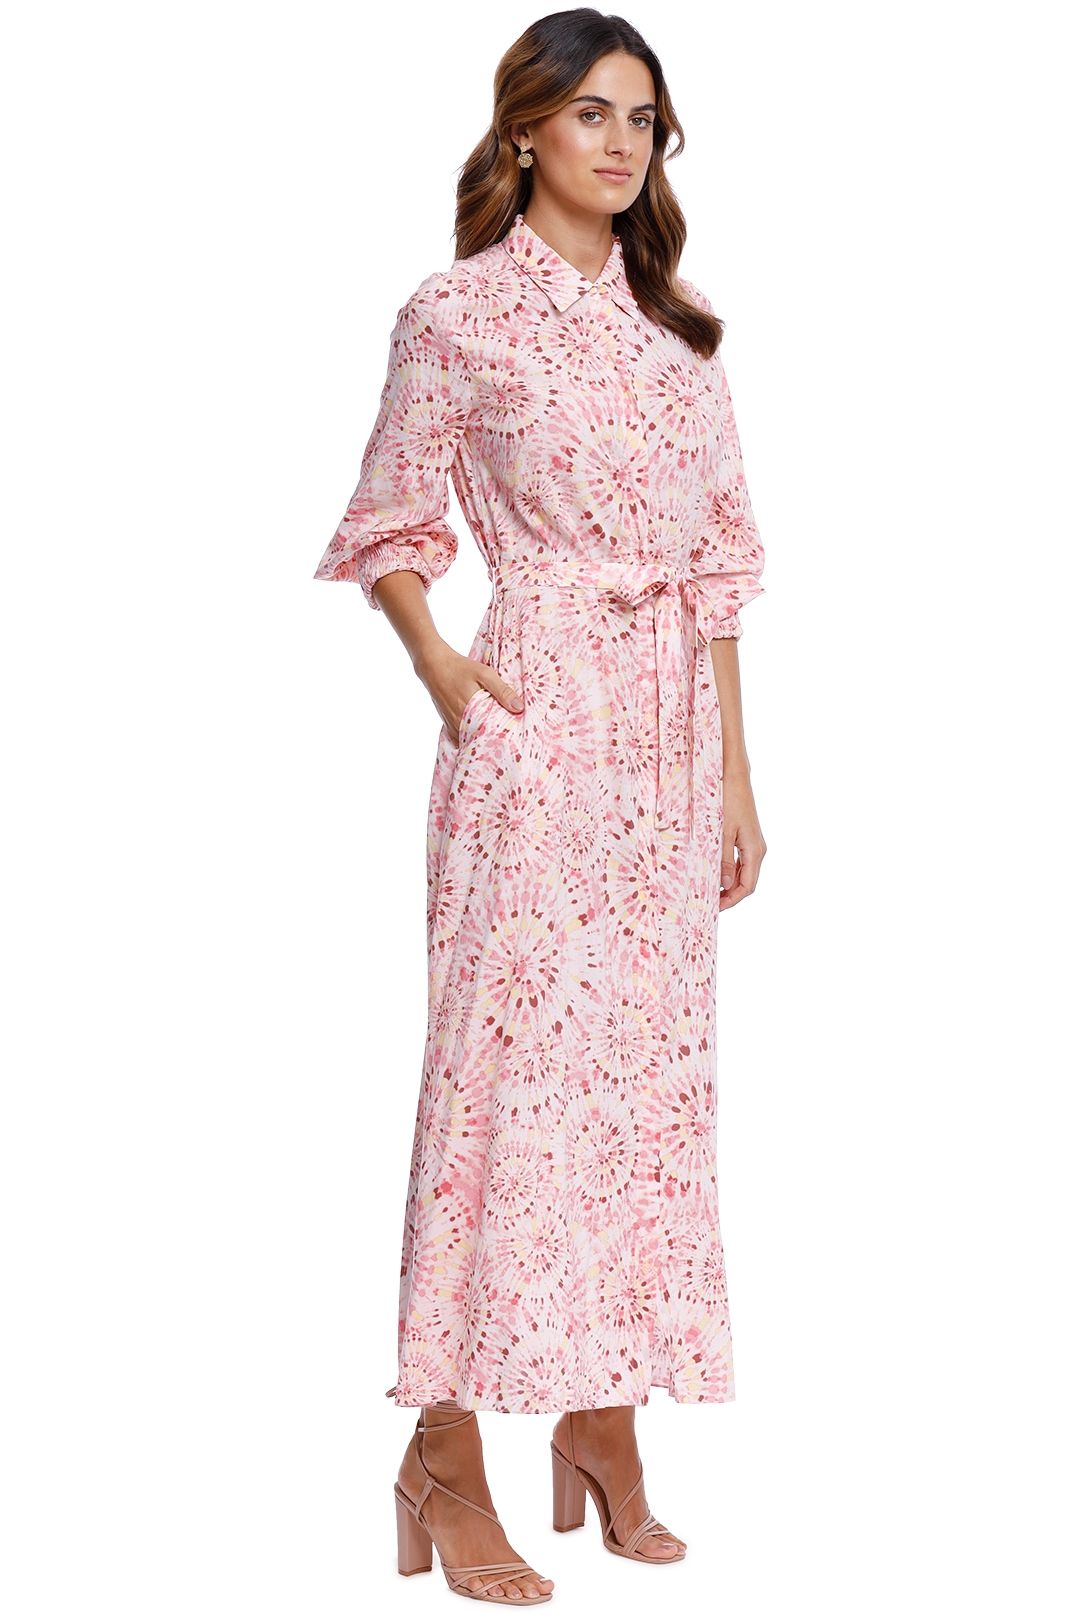 Misa LA Bettina Dress Pink Print